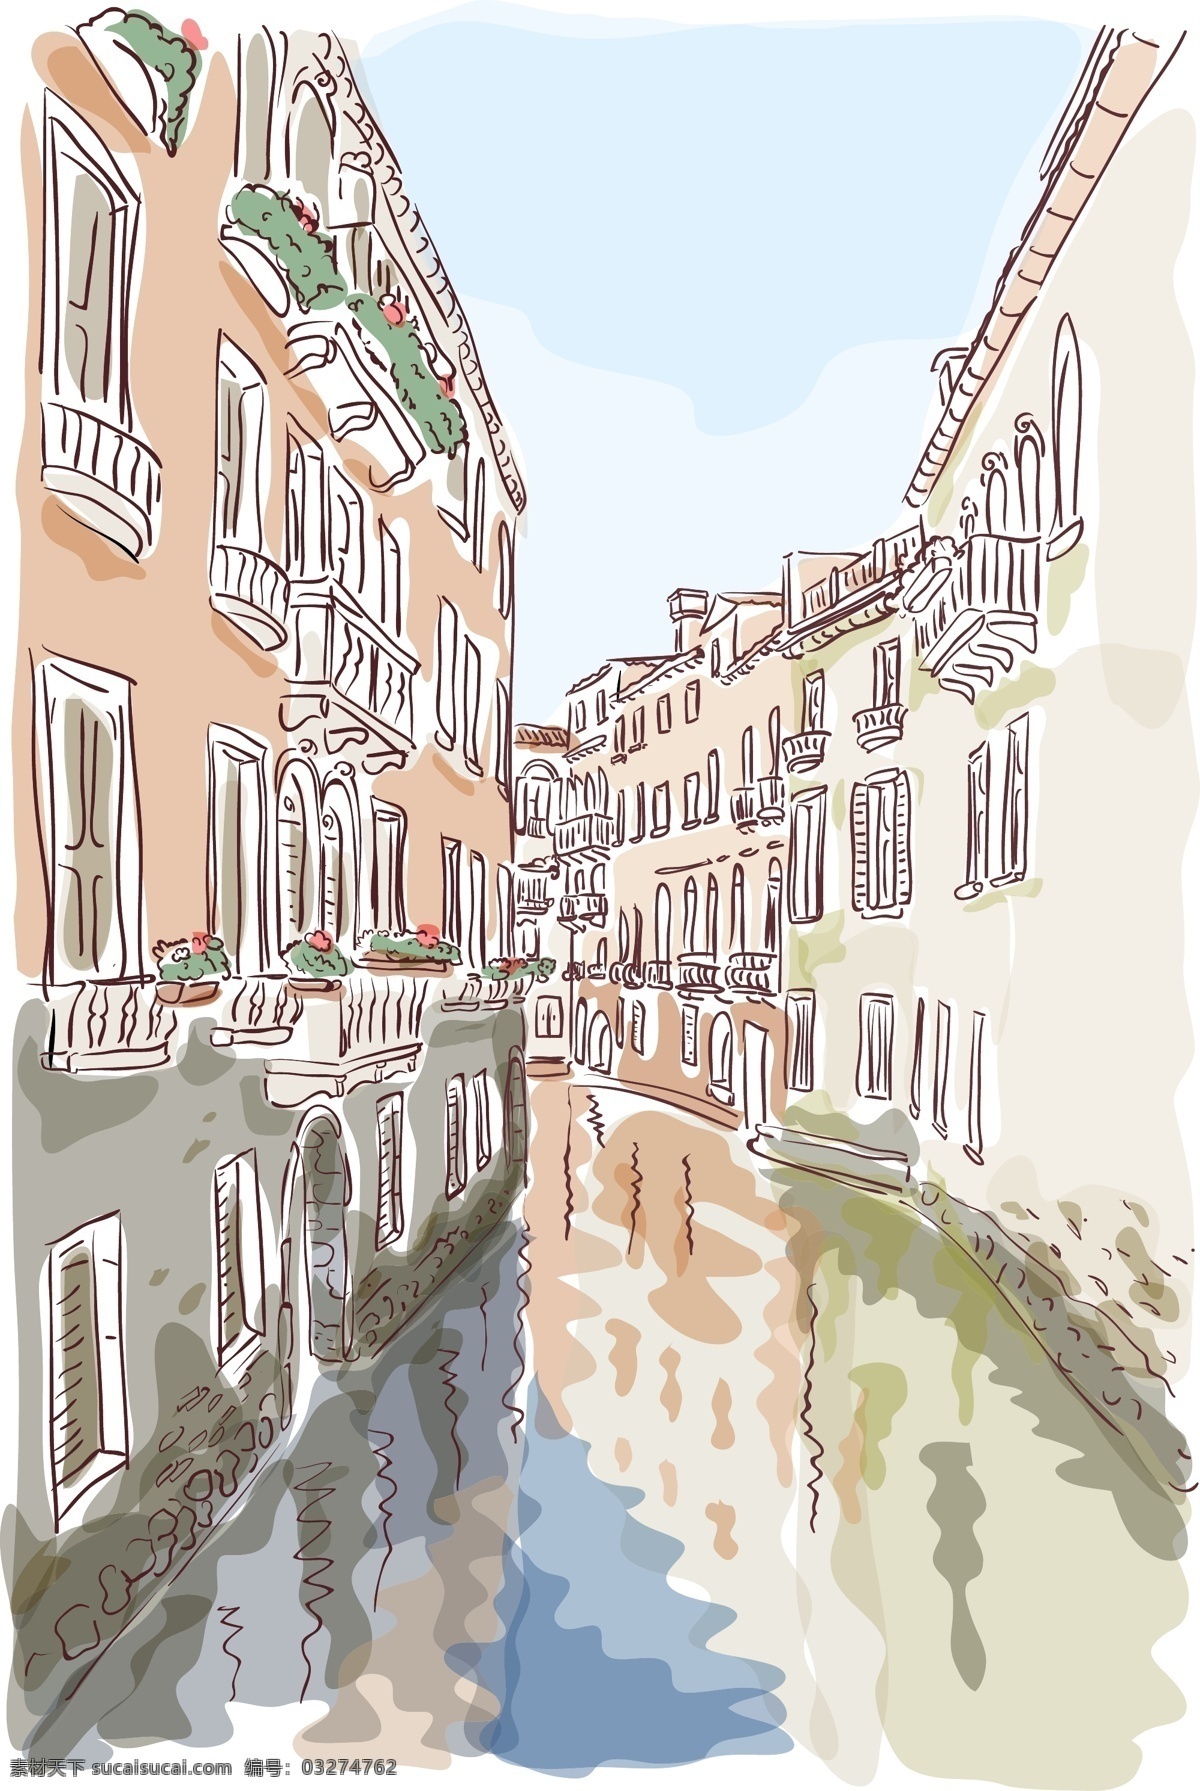 威尼斯 水城 风景 插画 威尼斯水城 风景插画 风景写生 印花图案 底纹边框 矢量素材 白色